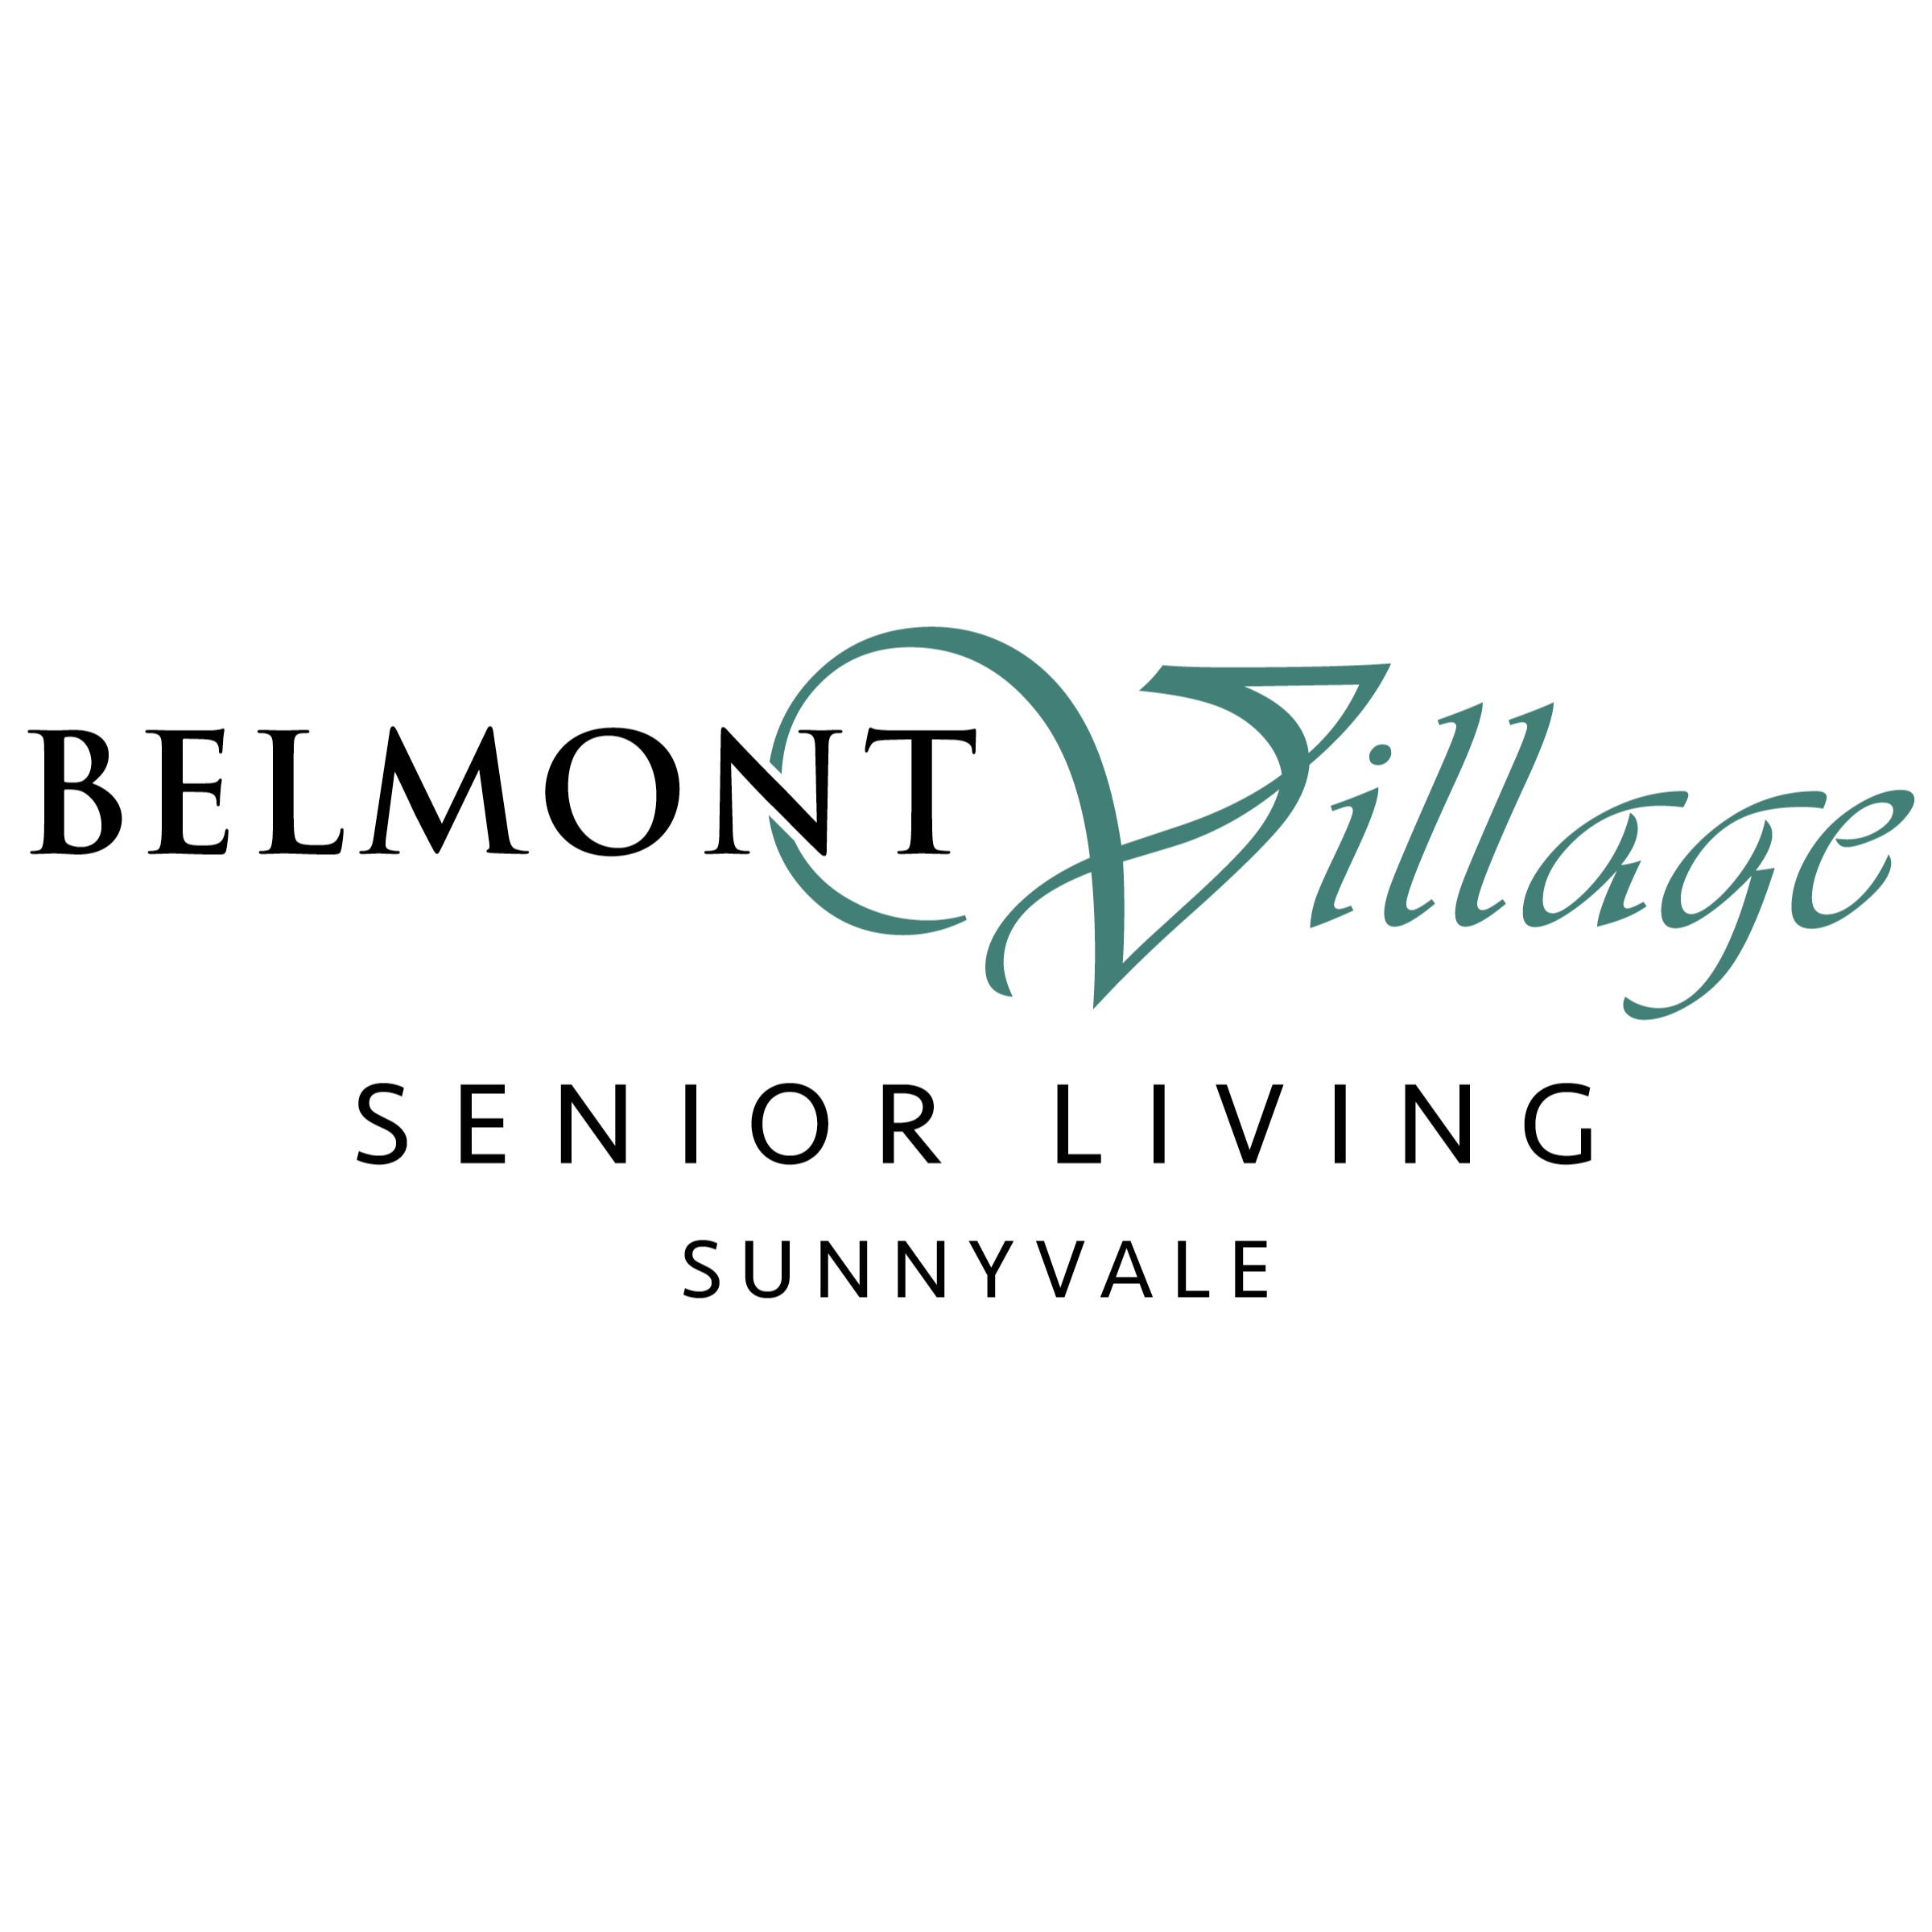 Belmont Village Senior Living Sunnyvale